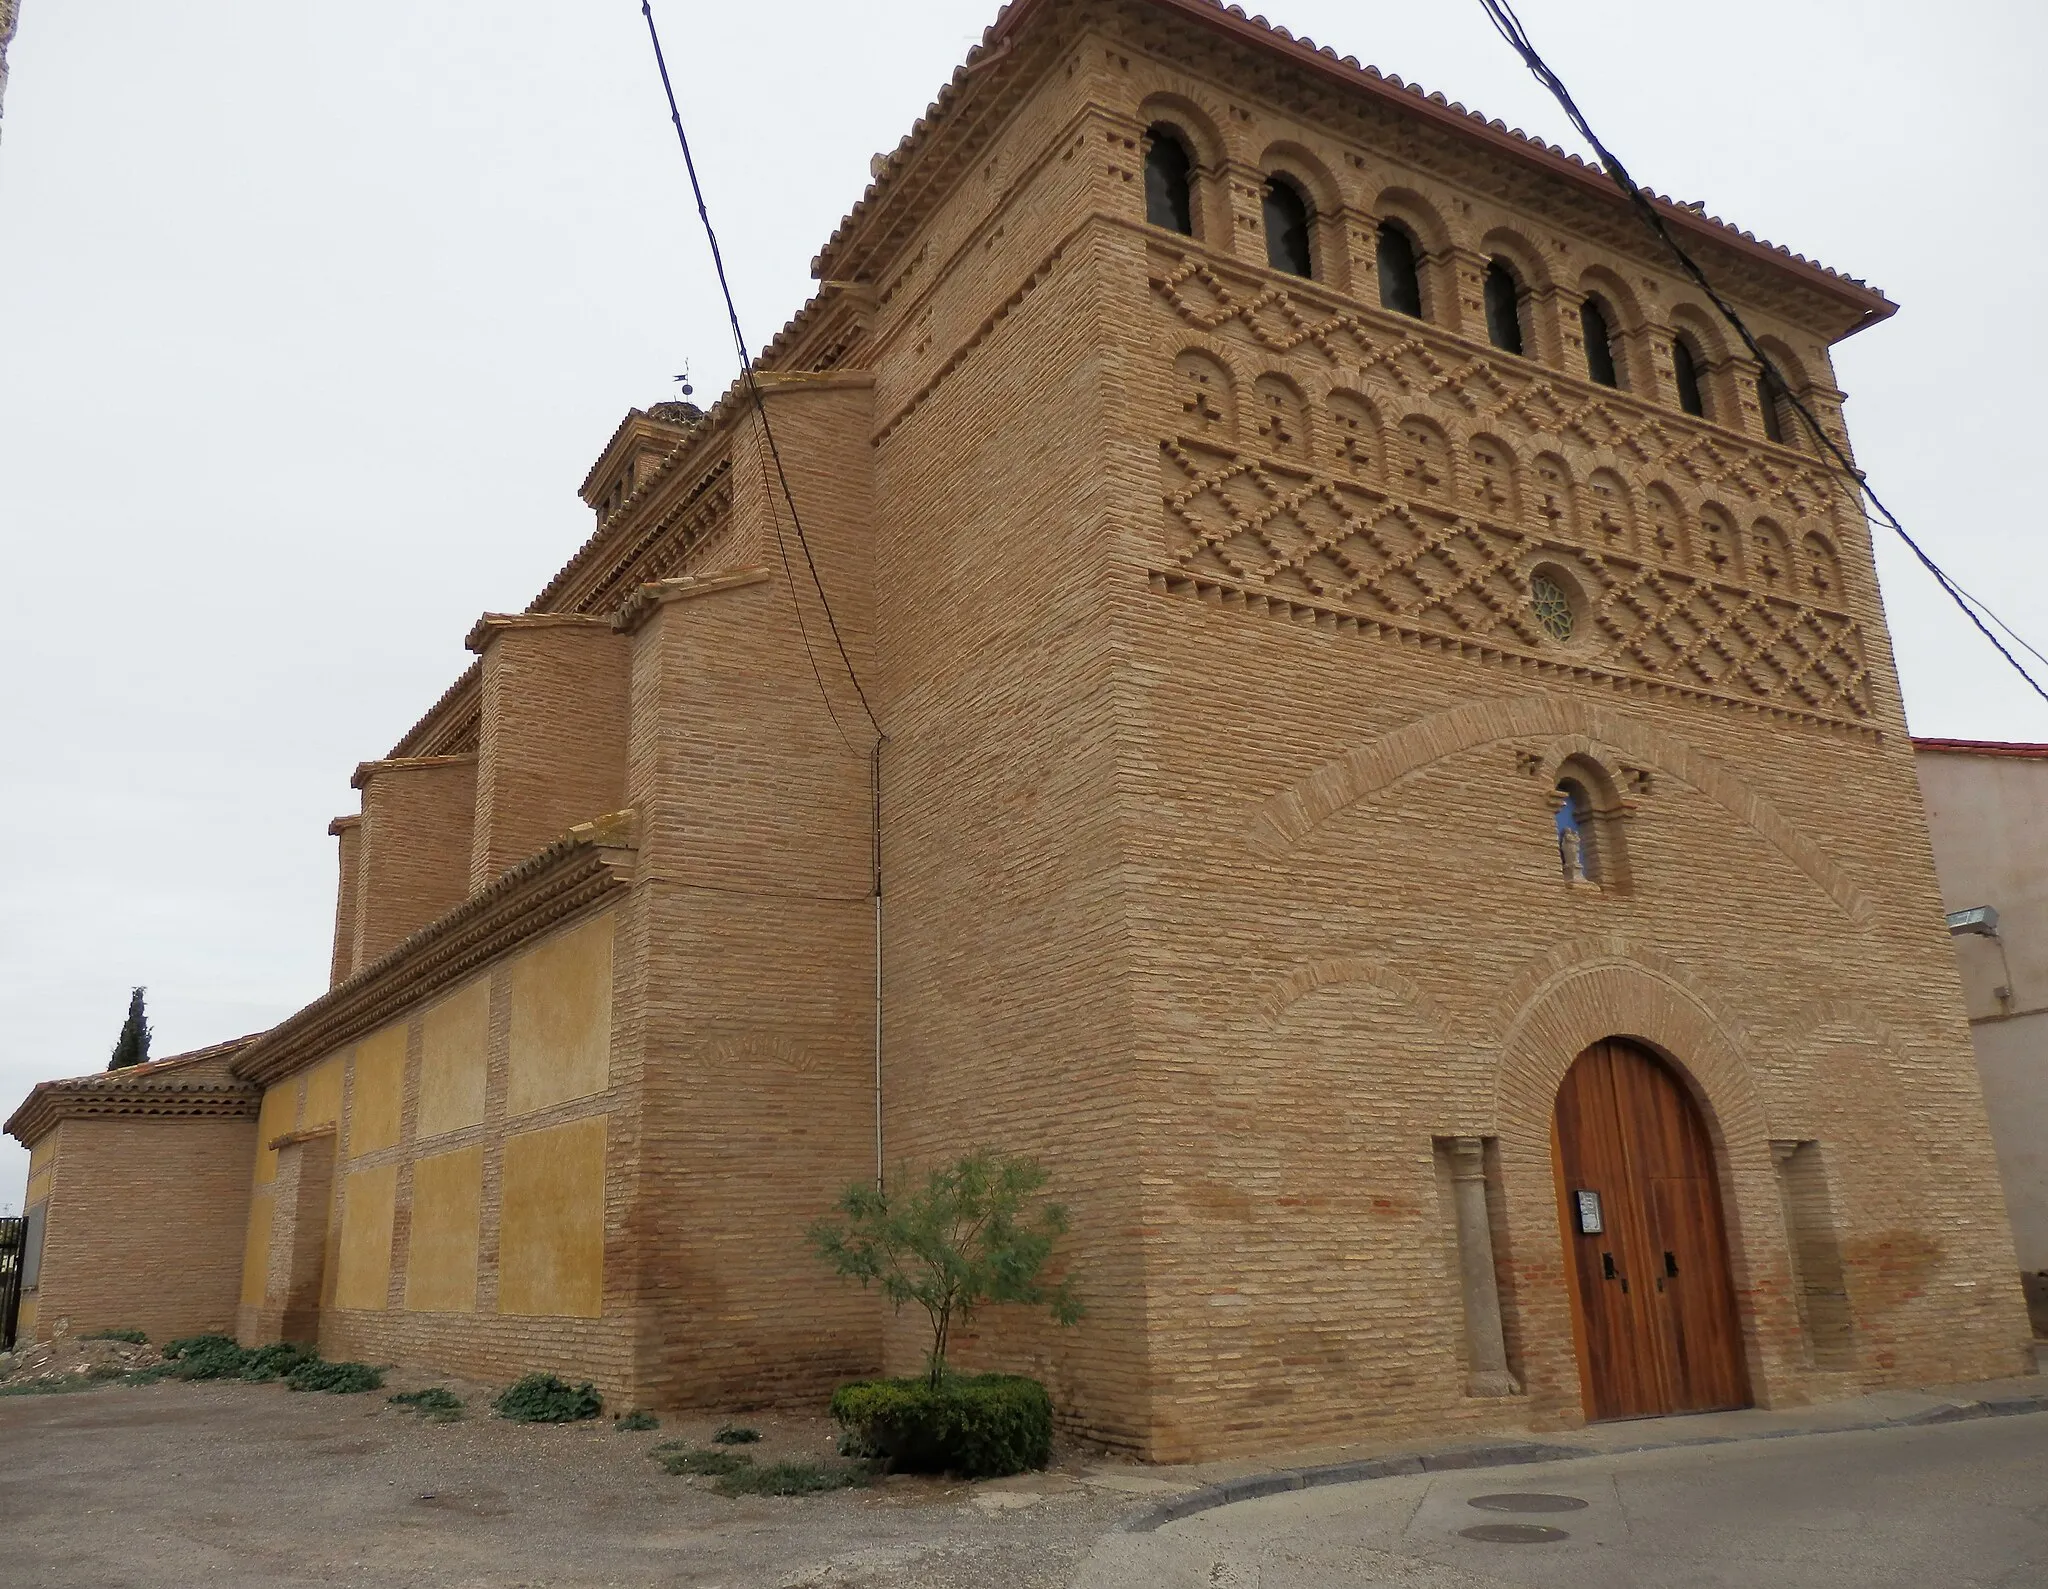 Photo showing: Church in San Mateo de Gállego, Zaragoza, Spain.